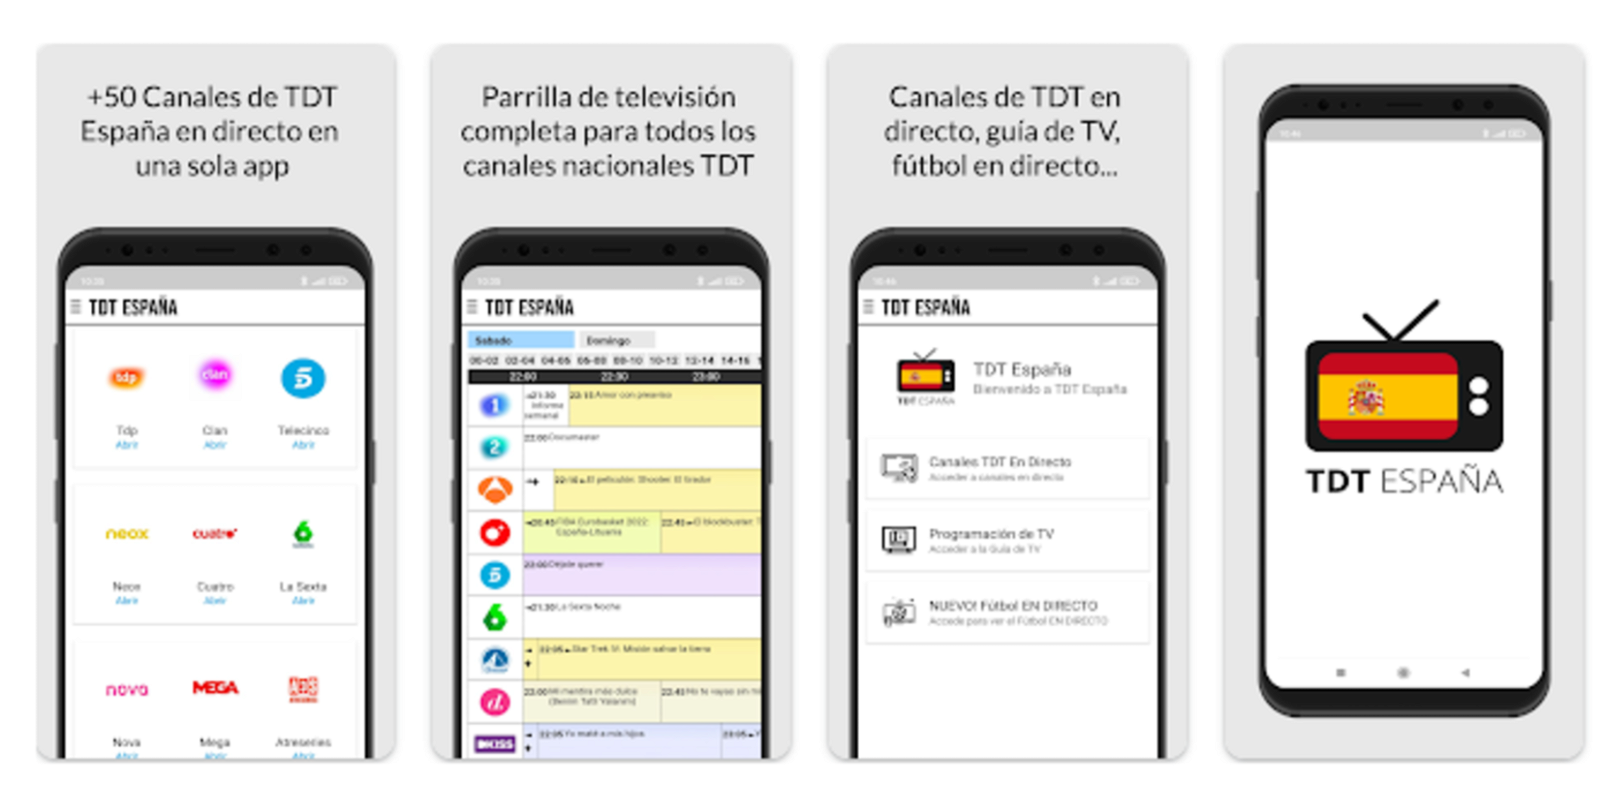 Imágenes de la app TDT España